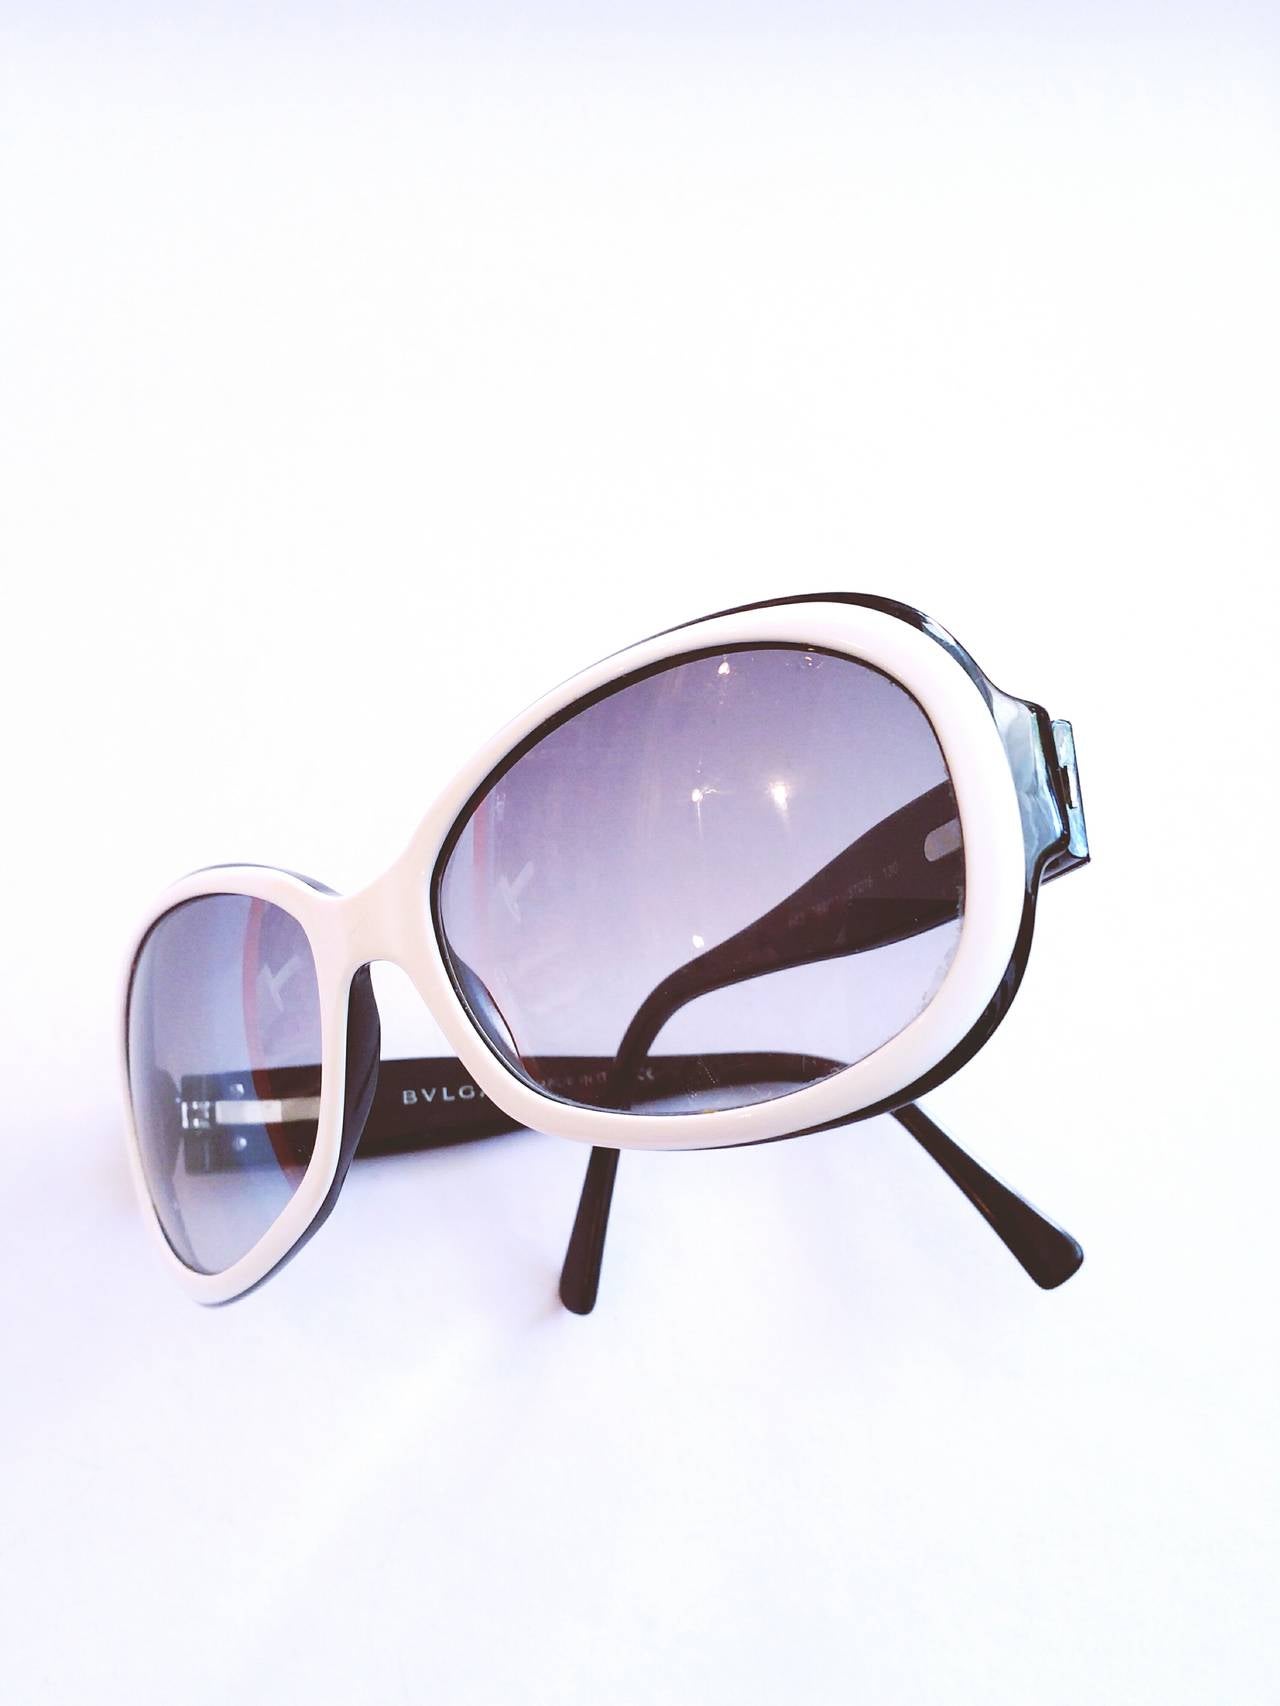 1990s Bulgari Sunglasses in black & white still with box.